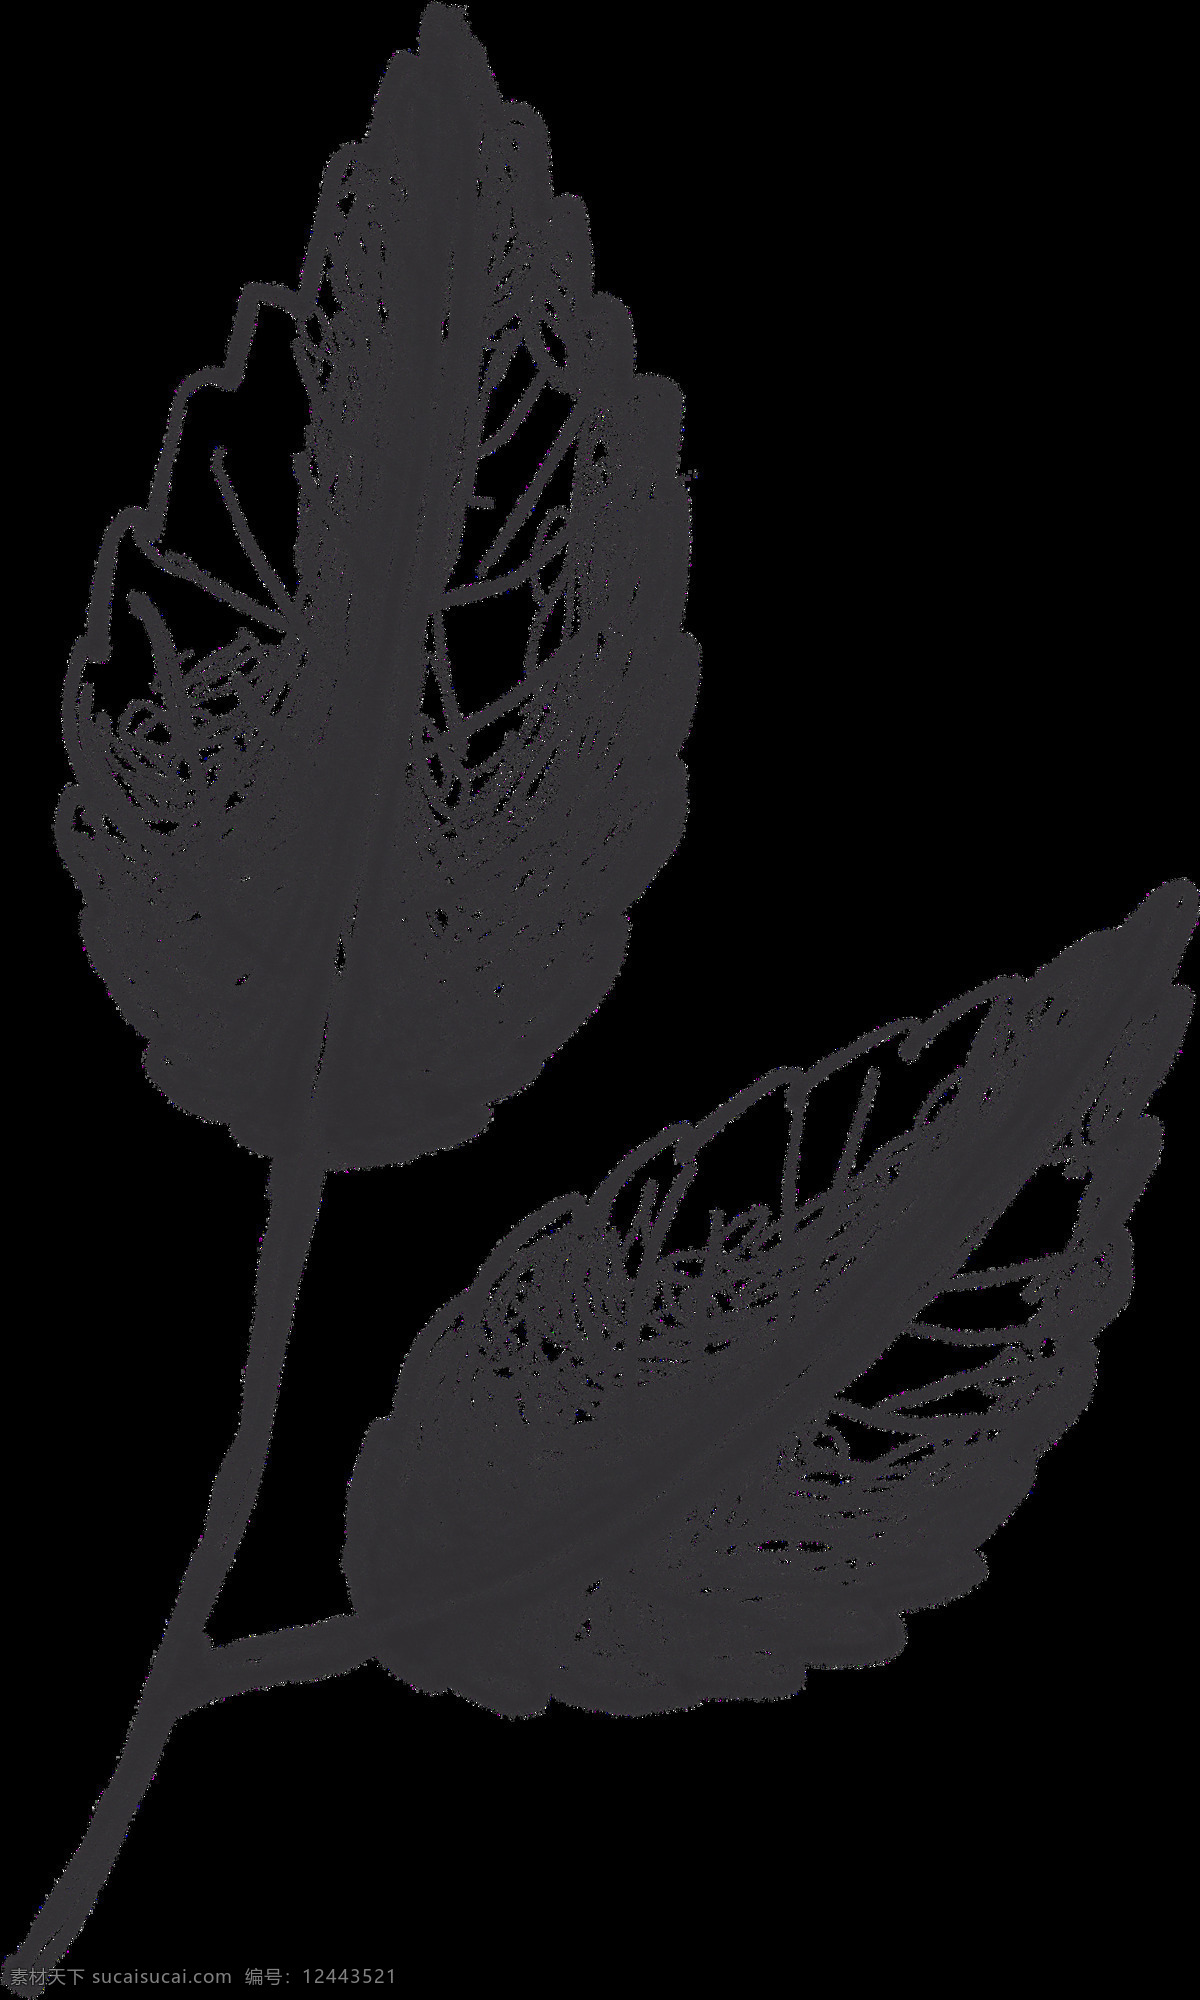 玫瑰花 素 叶片 描绘 画 绘画 速写 素描 黑白 创意 精美 植物 花瓣 花朵 背景图案 树枝 花骨朵 文化艺术 绘画书法